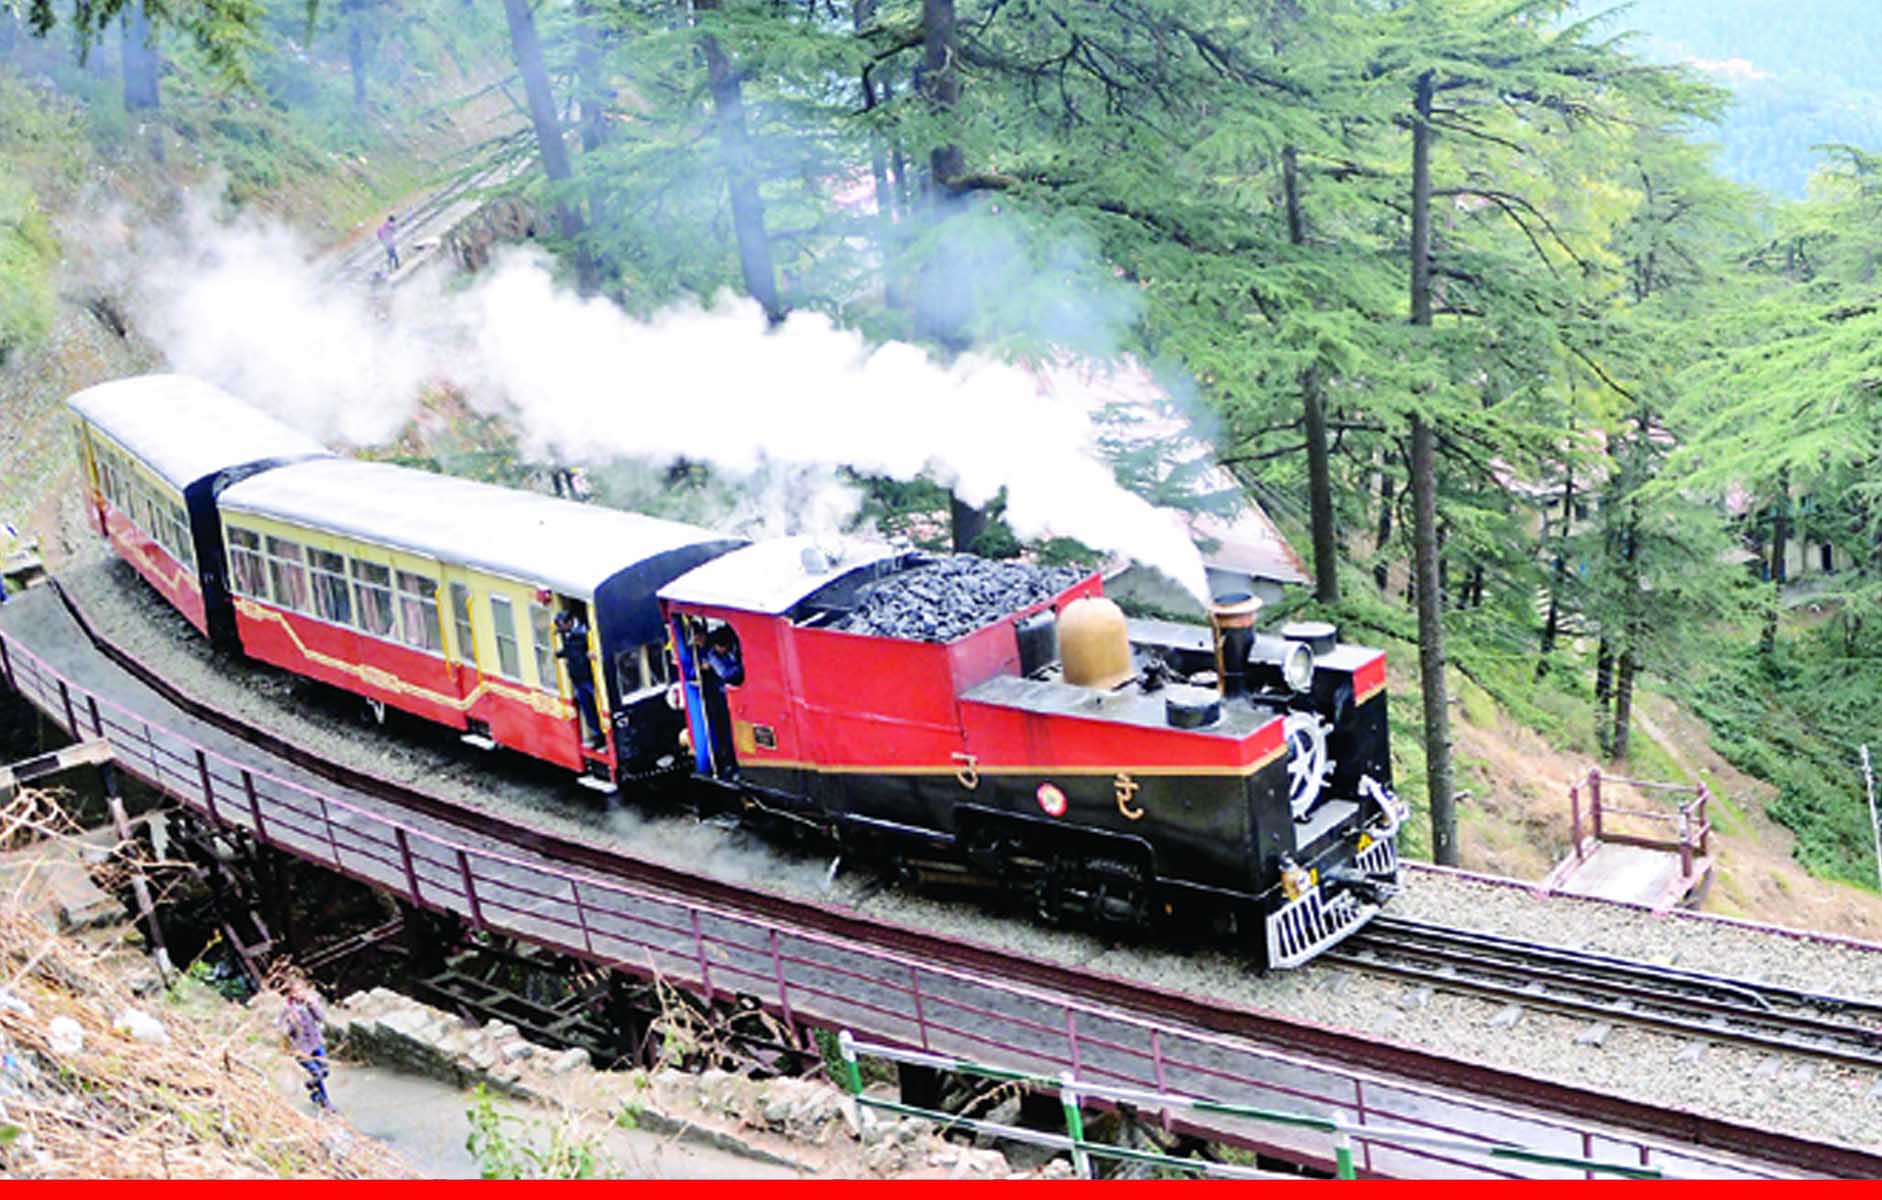 कालका-शिमला रेल ट्रैक पर 1 टिकट पर किसी भी ट्रेन में कर सकेंगे सफर